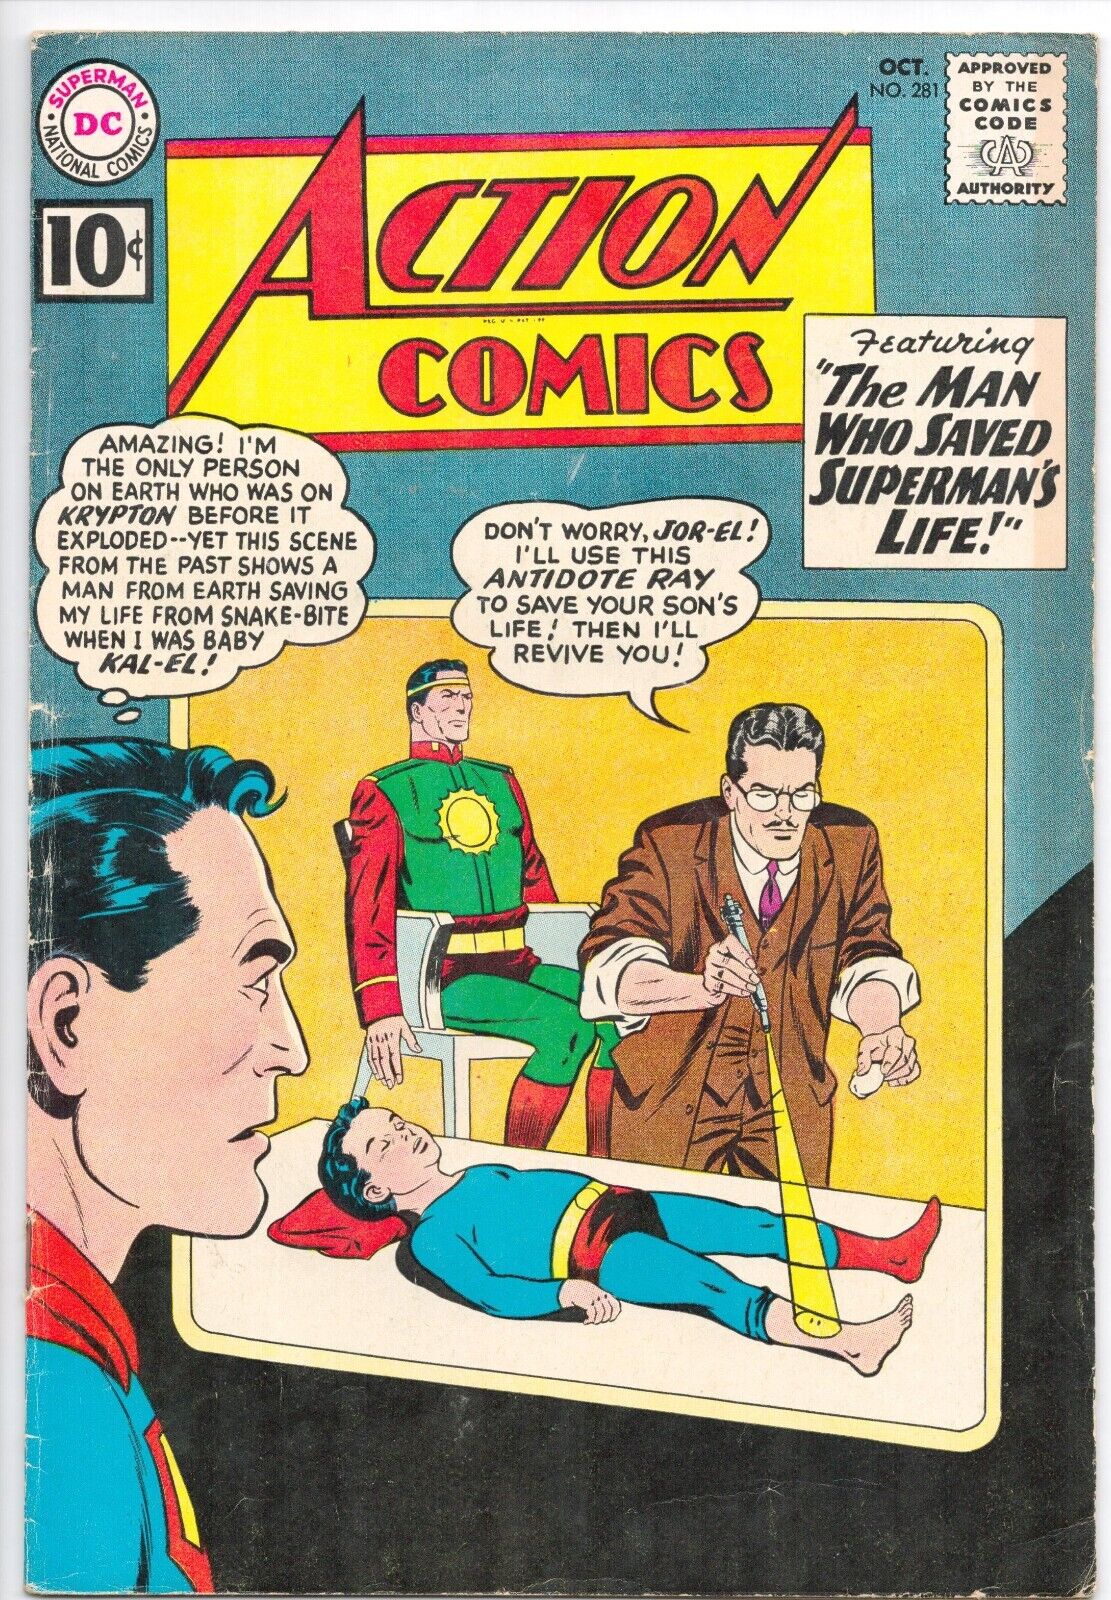 Action Comics 281, 1961. DC. Grade: 3.5